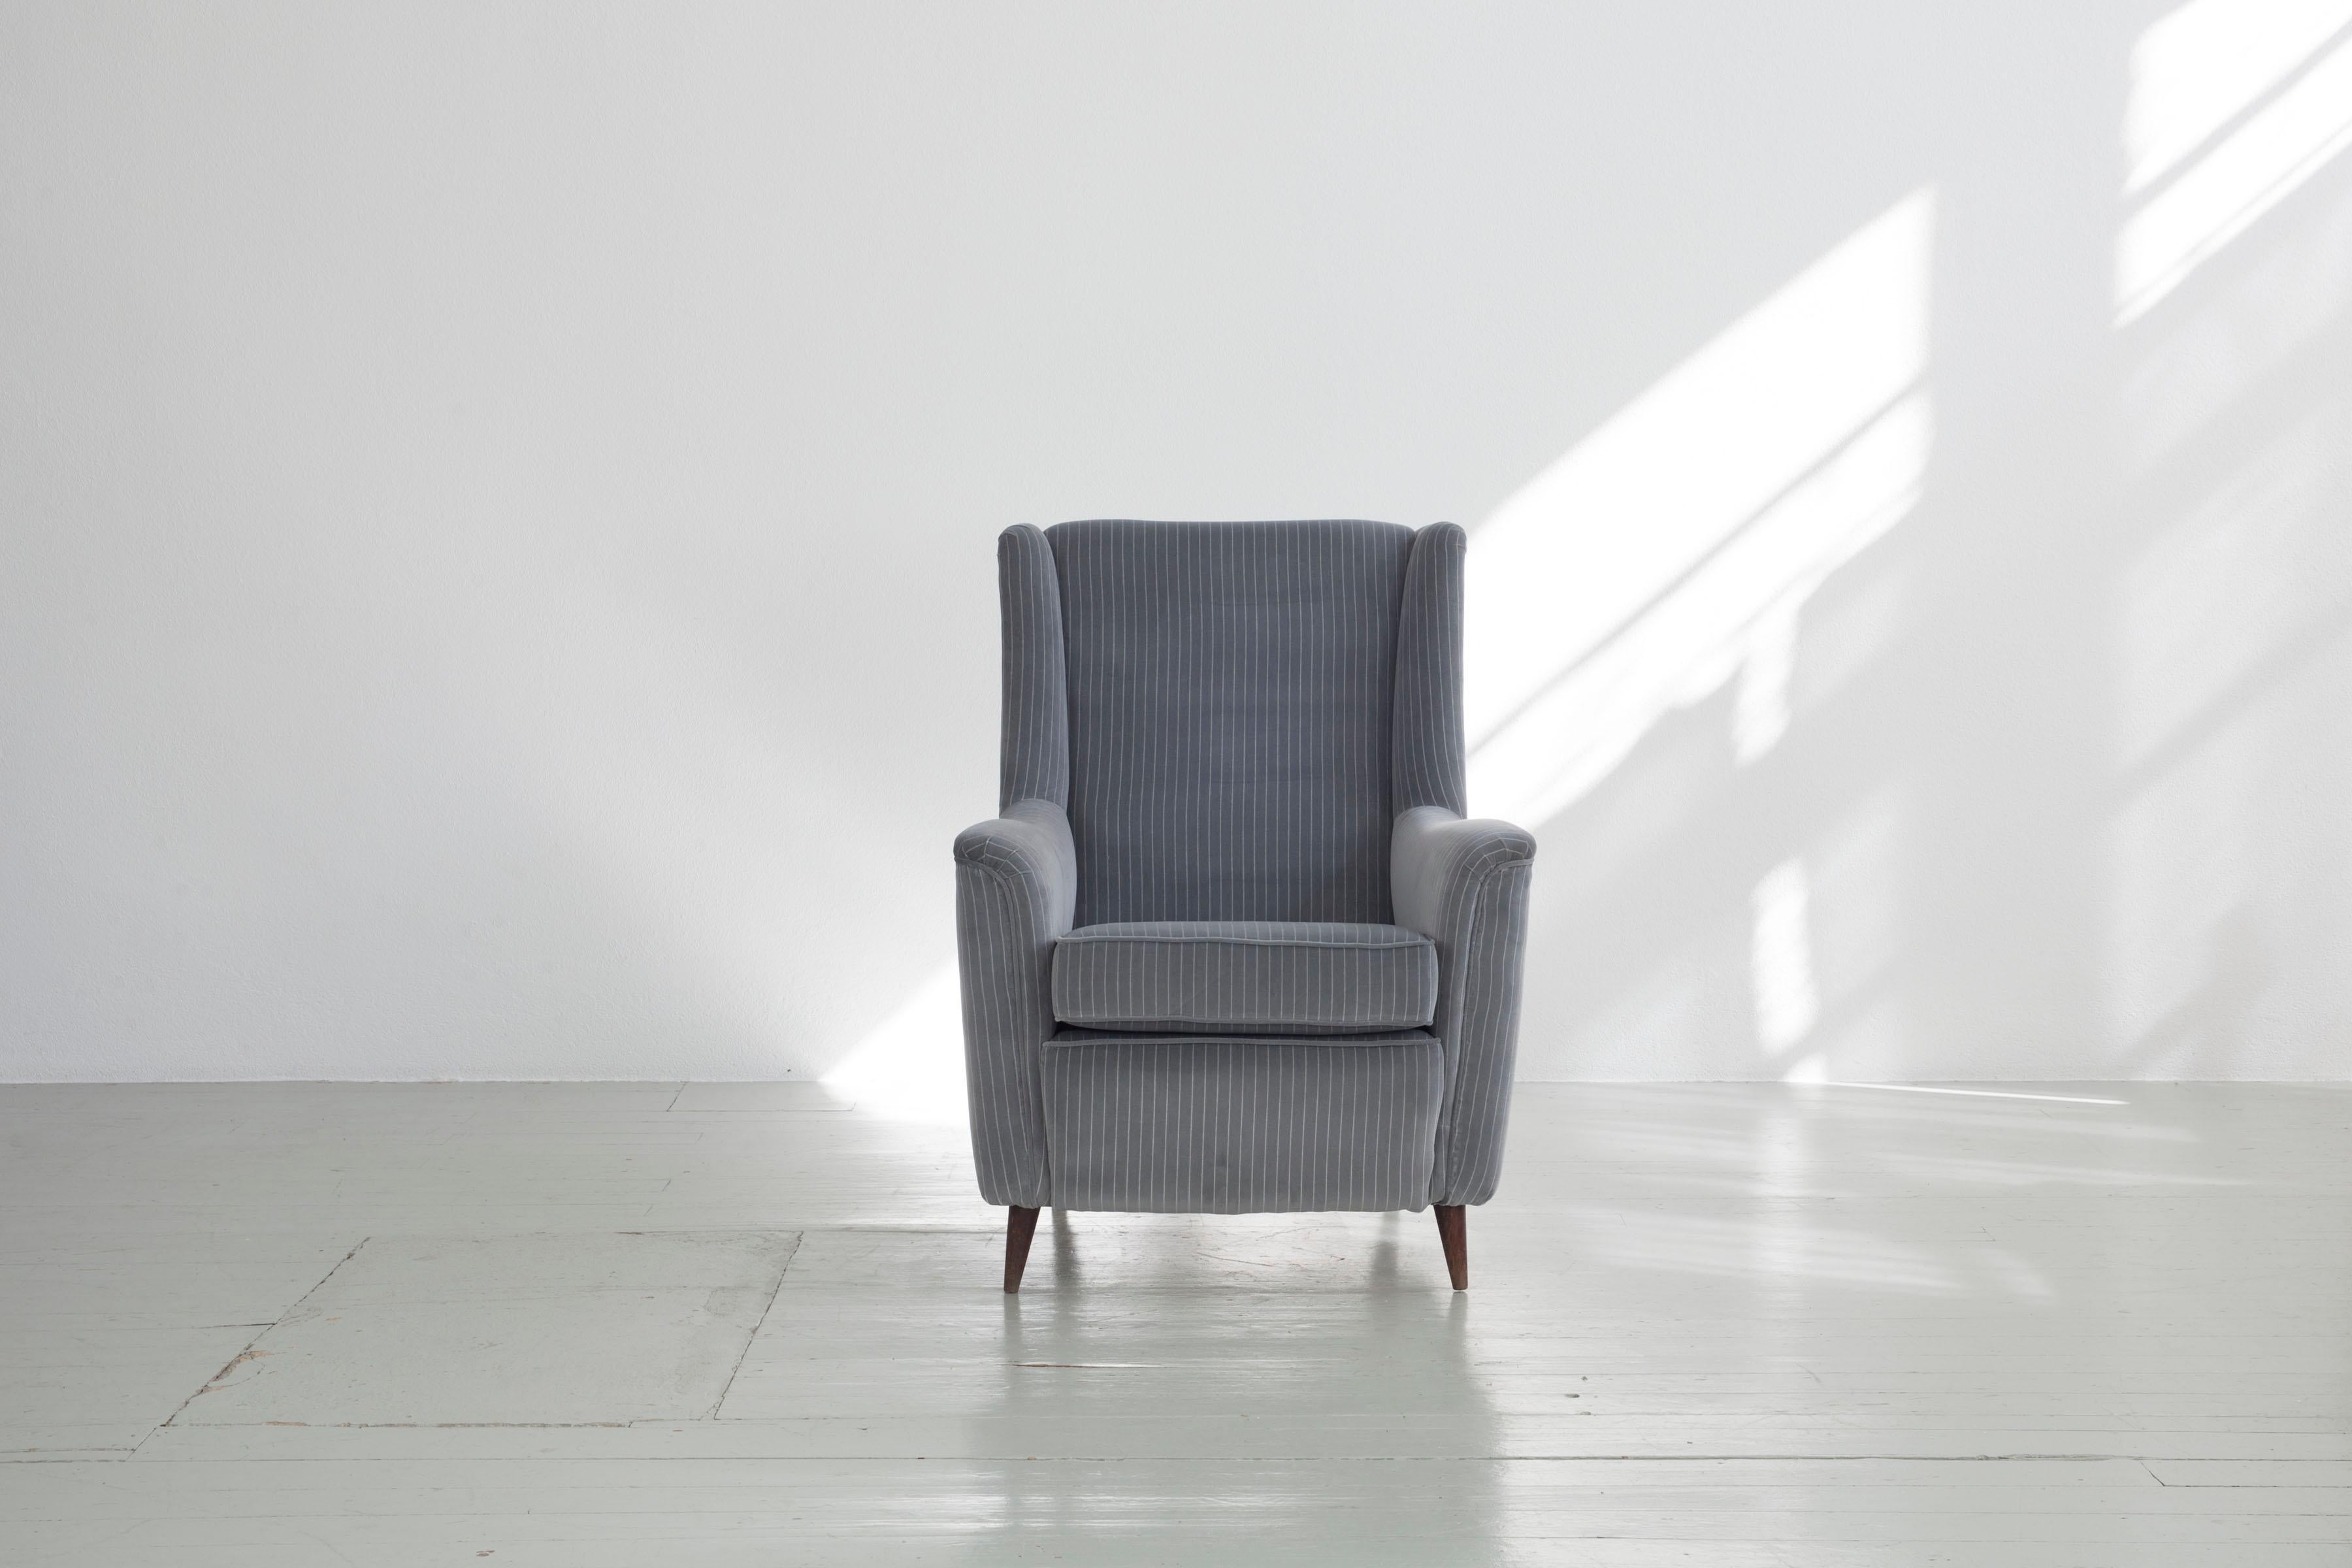 Dieses italienische Sesselpaar wurde von Ico Parisi entworfen und in den 1950er Jahren von Ariberto Colombo in Cantu hergestellt. Das Möbelstück ist mit einem grau-weiß gestreiften Samtstoff bezogen, wird von dunklen Holzbeinen getragen und ist in